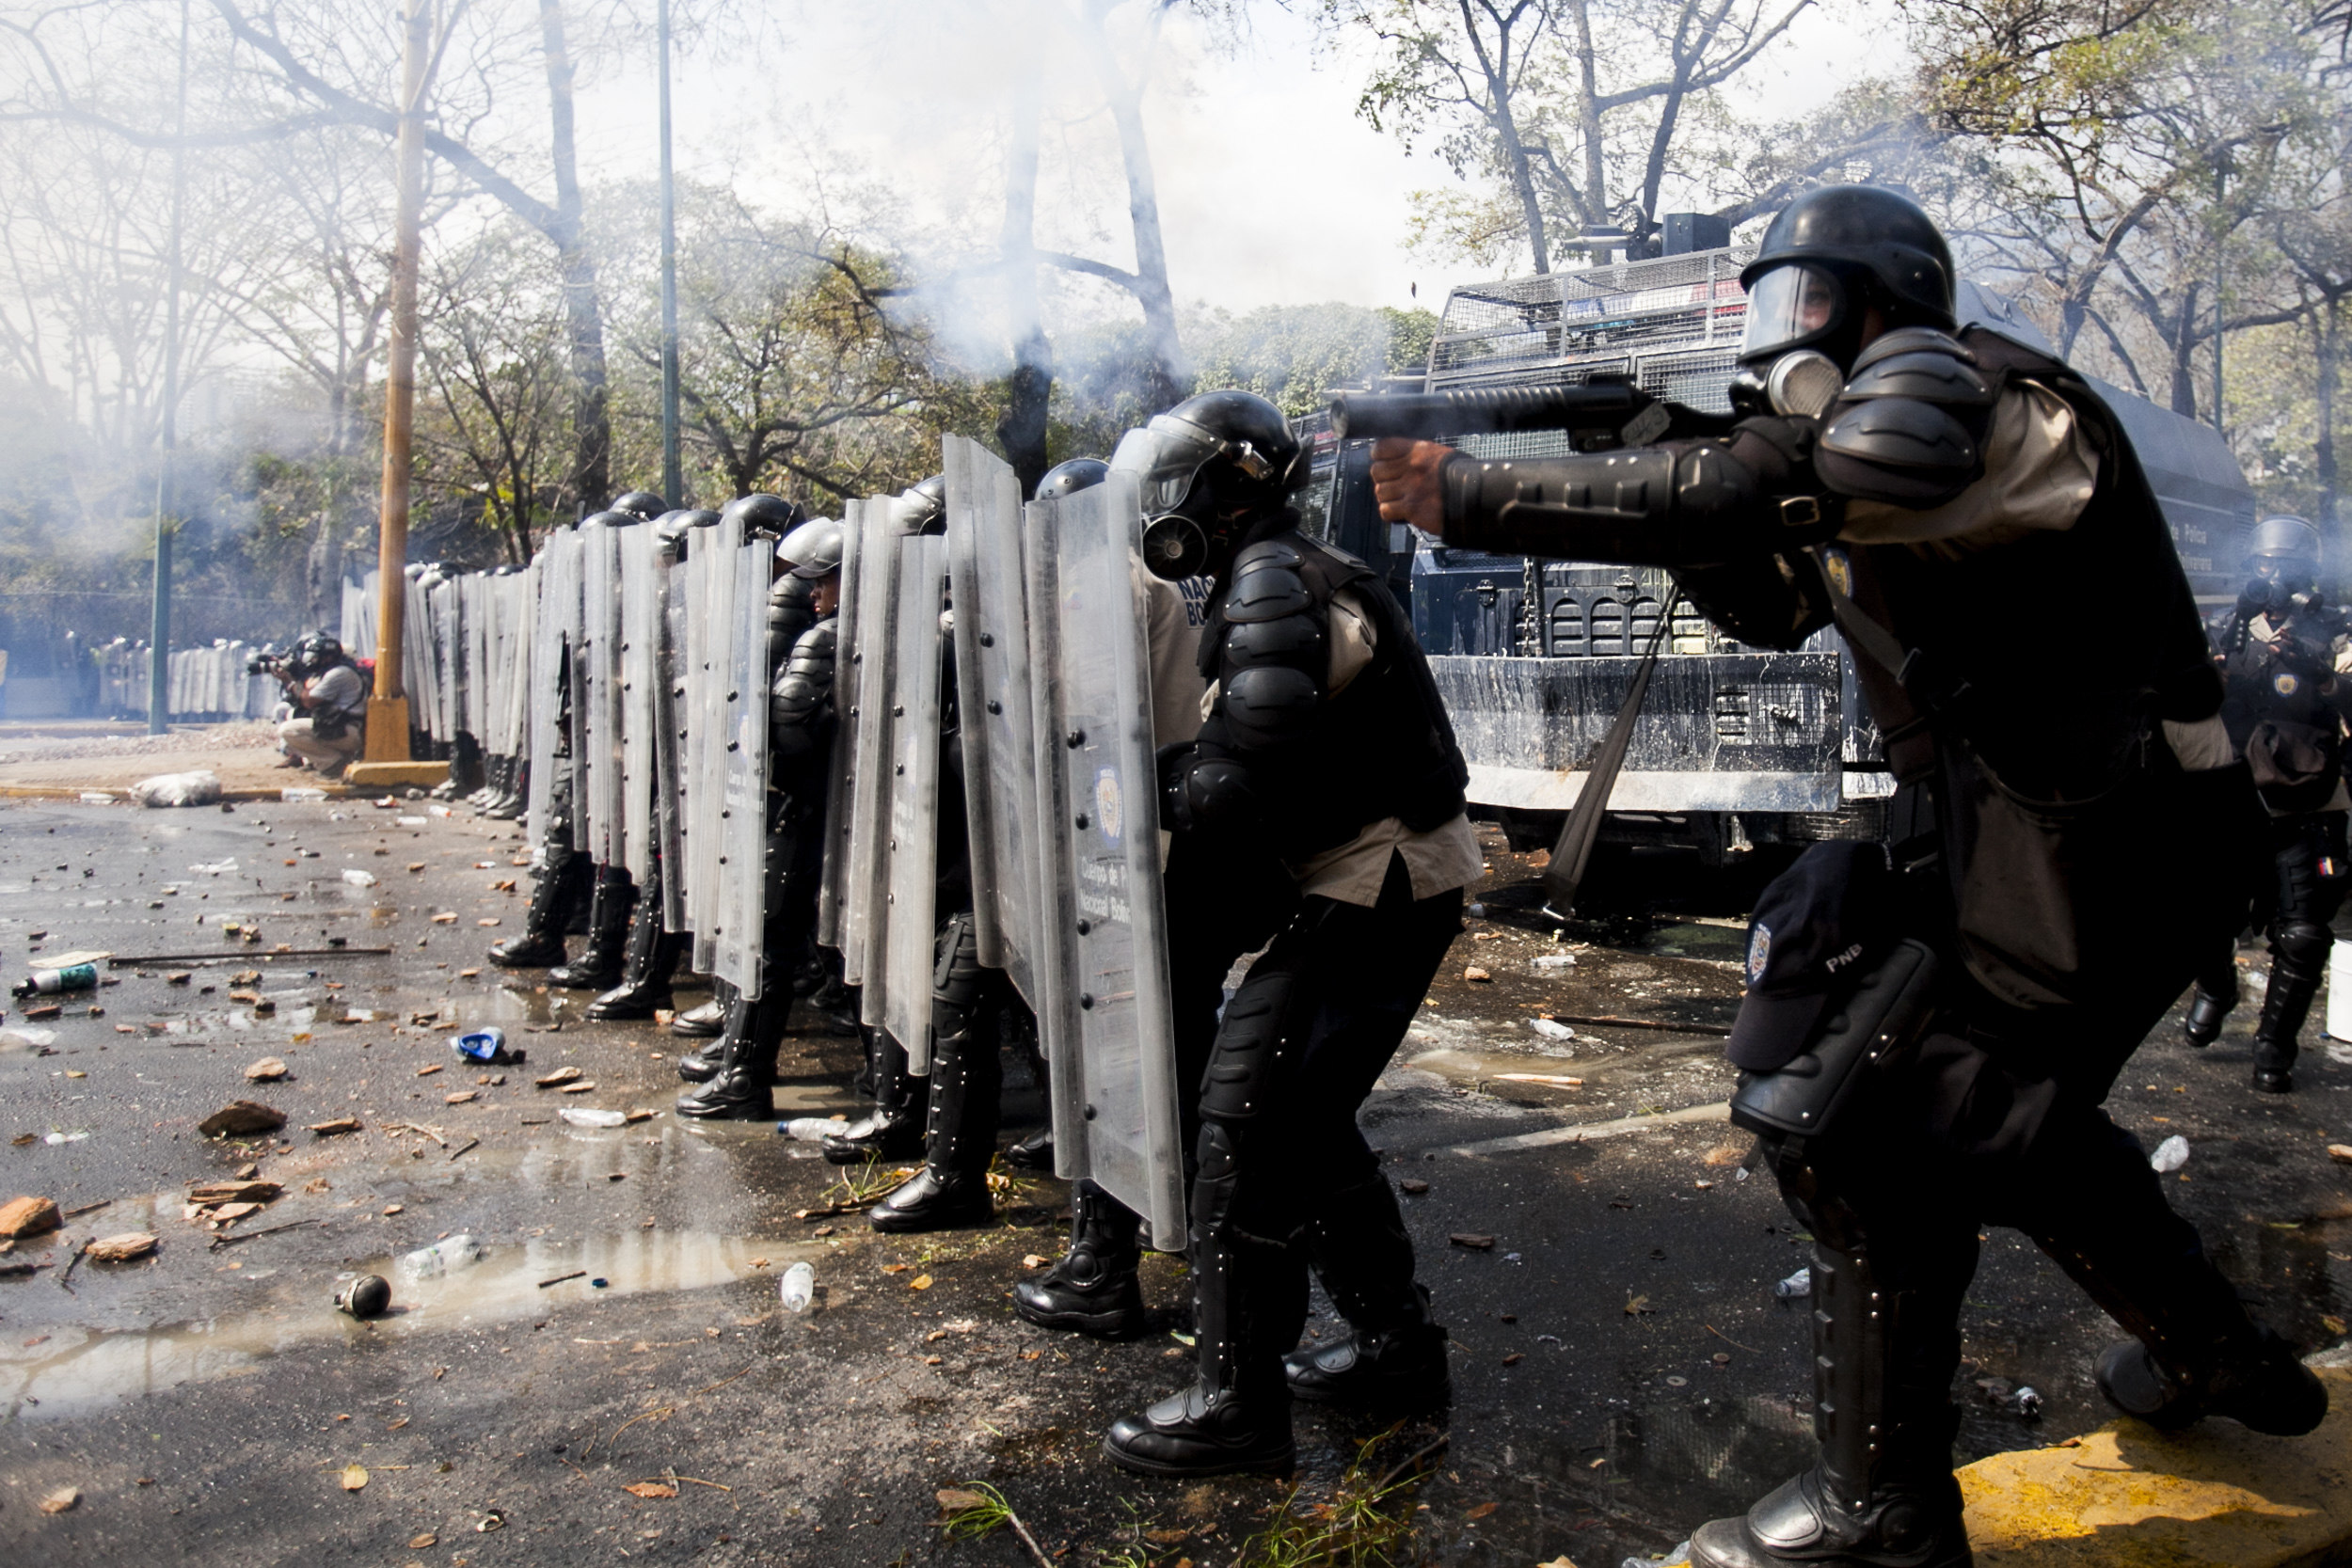 Falta de independencia institucional y leyes regresivas debilitan democracia en Venezuela